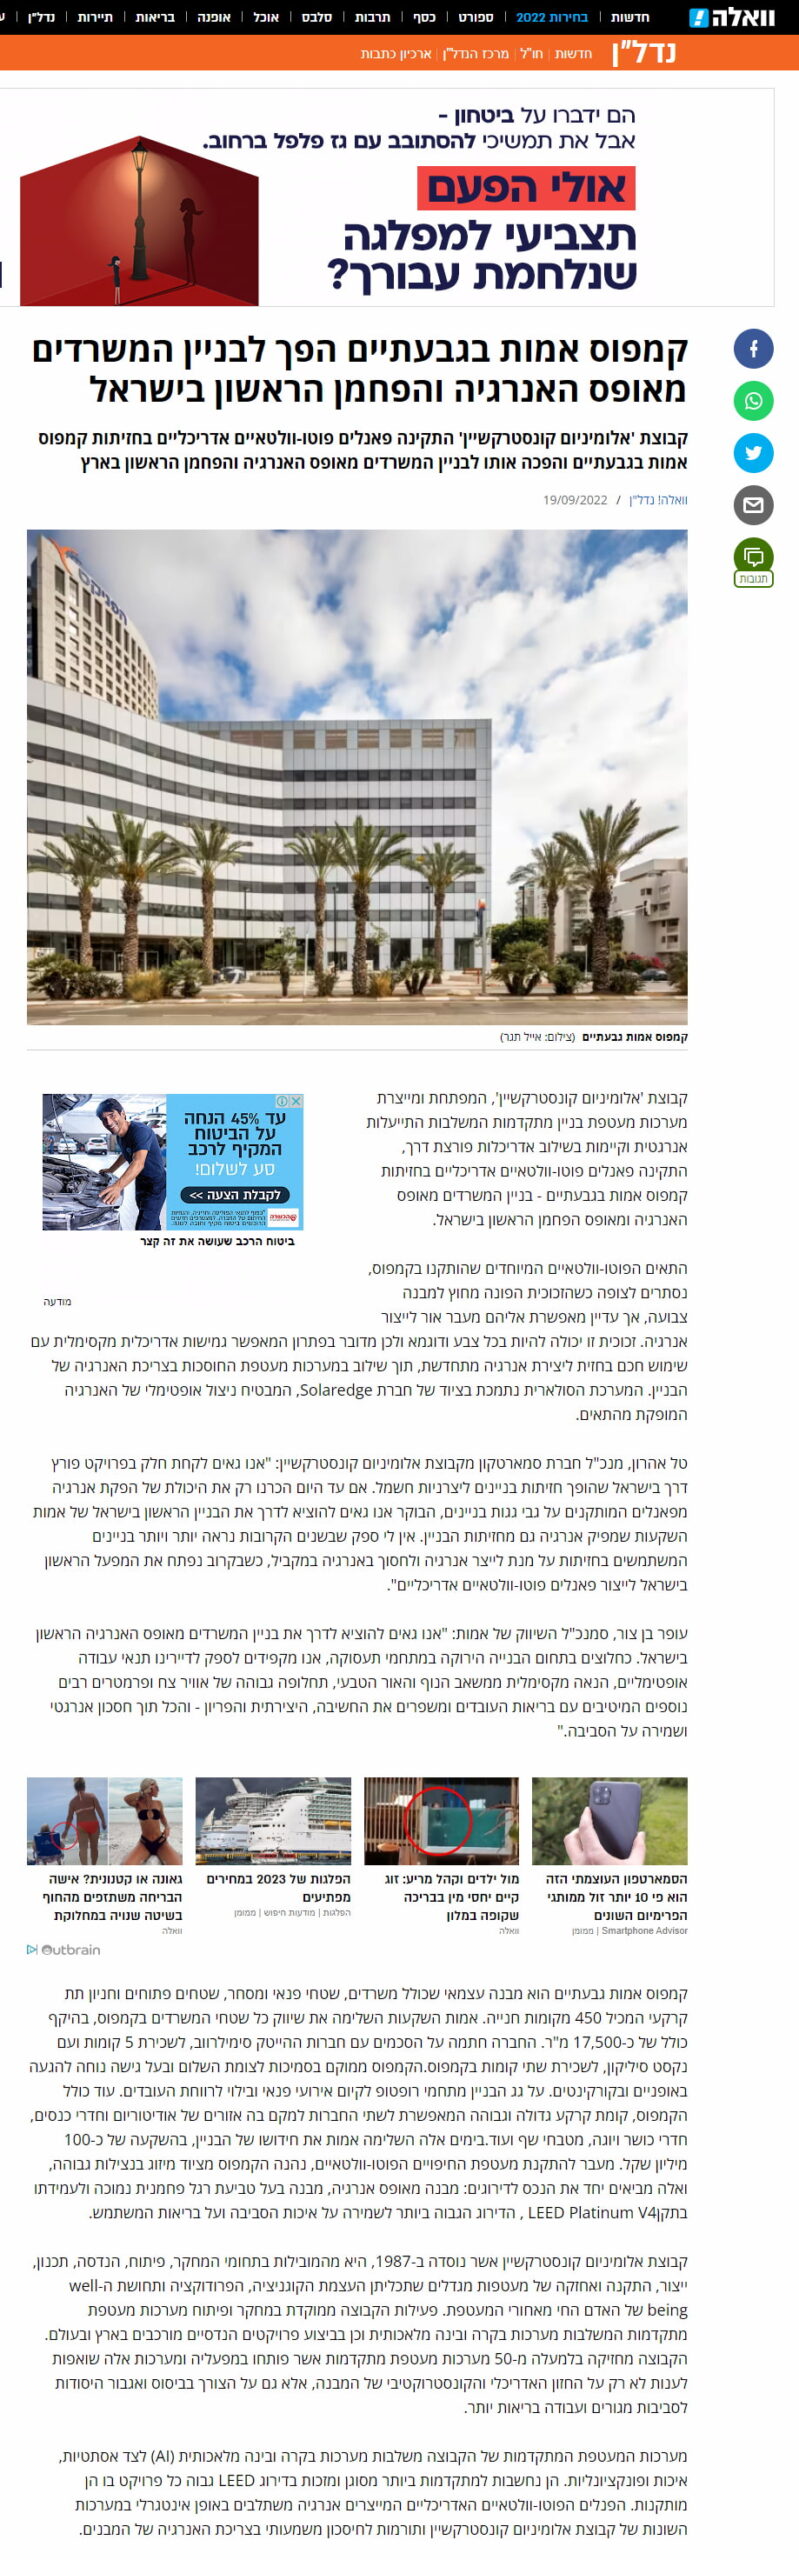 קמפוס אמות בגבעתיים הפך לבניין המשרדים מאופס האנרגיה והפחמן הראשון בישראל